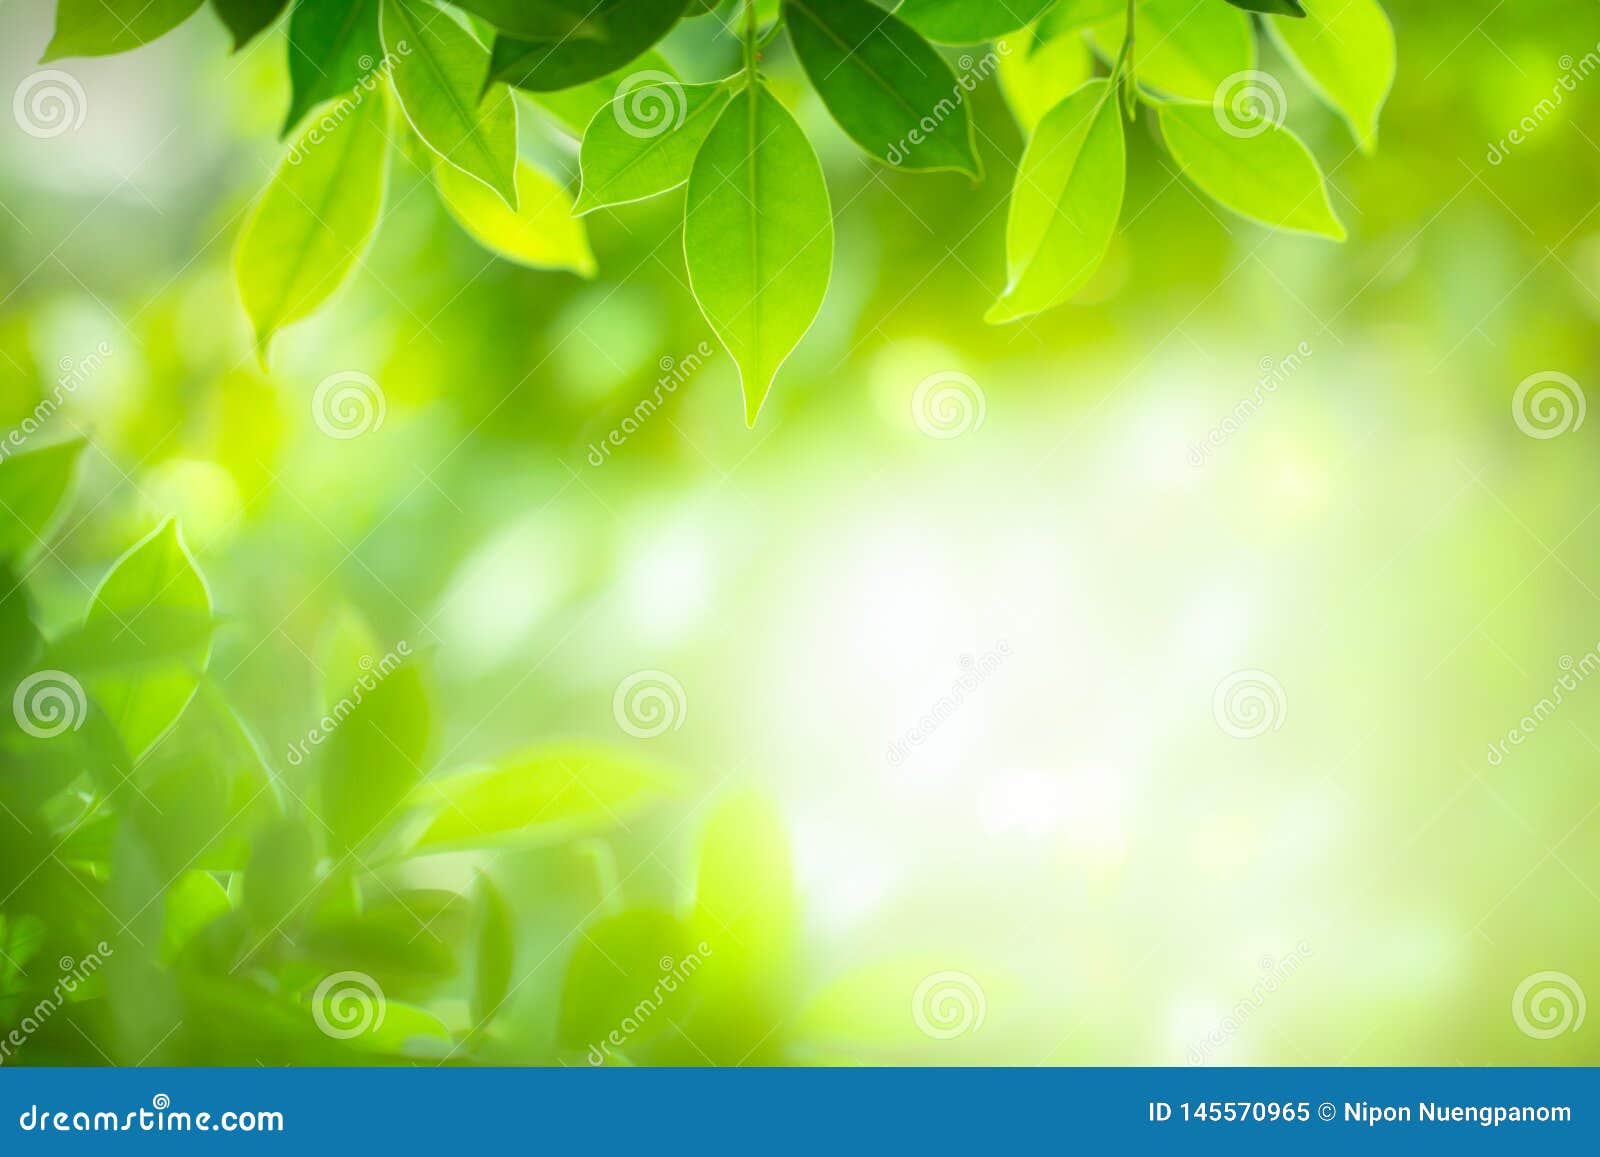 Những chiếc lá xanh tươi mơn mởn nhìn thật tươi mới và tươi sống! Nếu bạn muốn cảm nhận một tác phẩm nghệ thuật tự nhiên, hãy xem hình ảnh này - bức tranh thực sự tuyệt đẹp được sáng tạo từ những chiếc lá xanh rực!